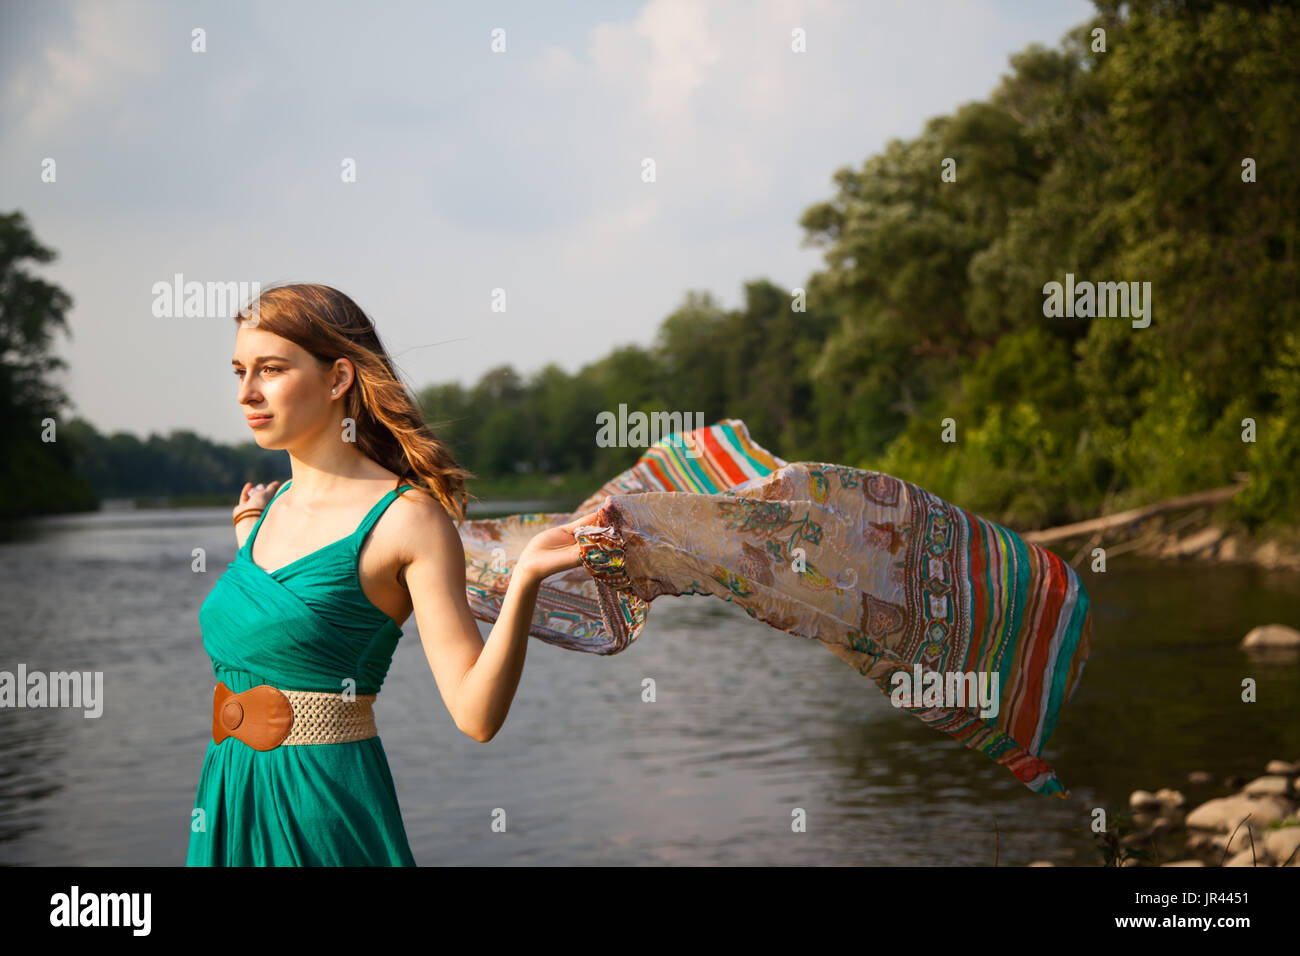 Junge Frau mit einem blaugrün Kleid steht an einem Fluss / See holding im Wind flatternden Teal trendigen Schal.   Sie ist entspannt und ruhig während Gefühl t Stockfoto